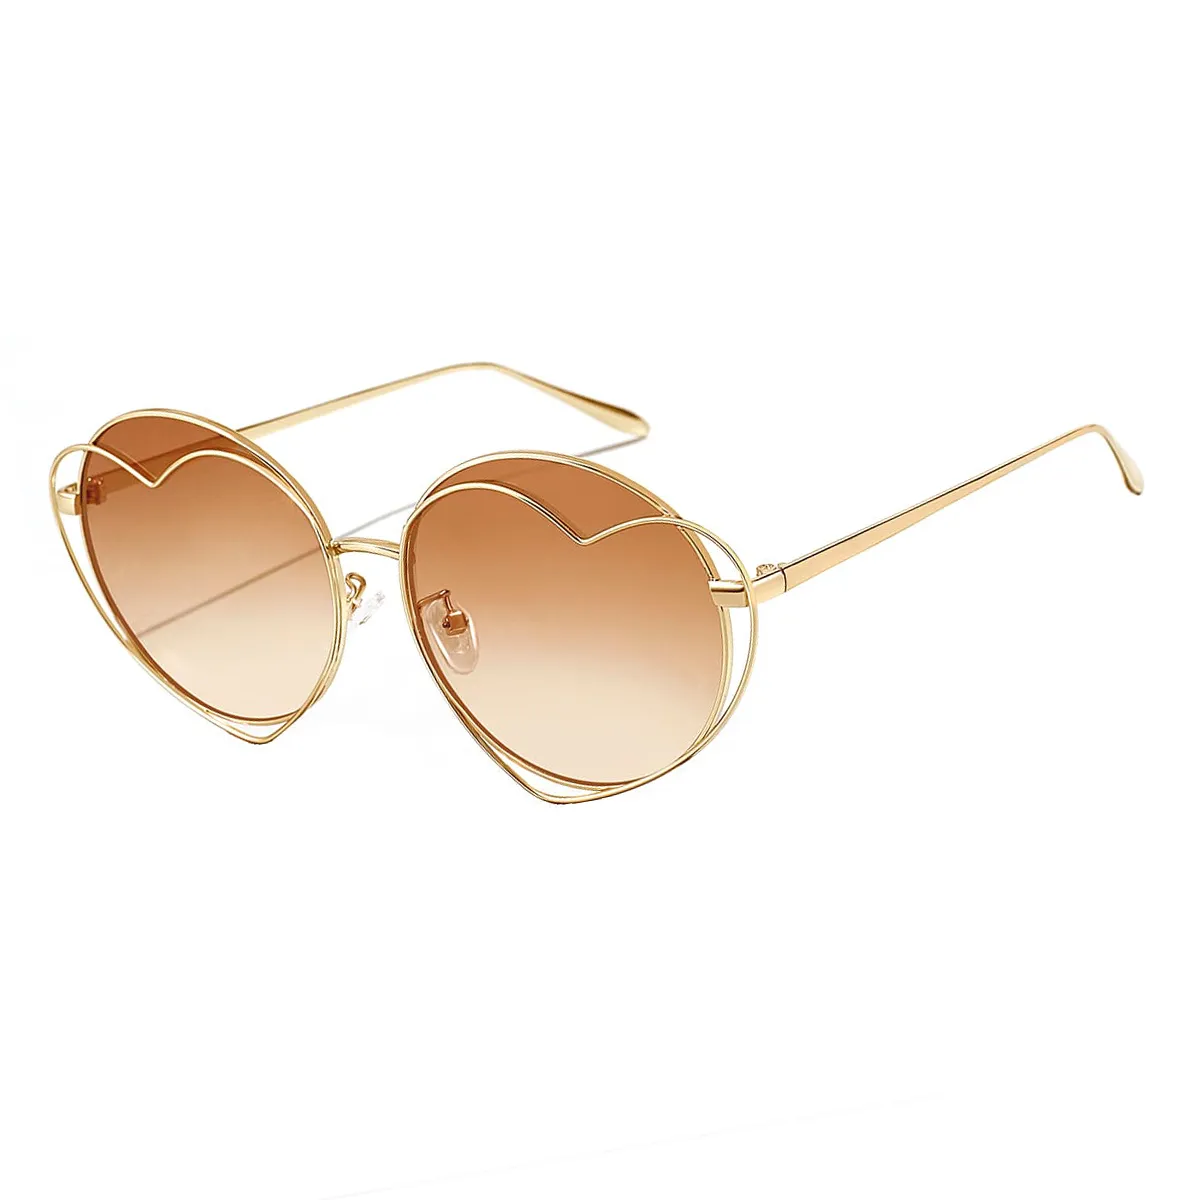 Myra - Round Gold Sunglasses for Women